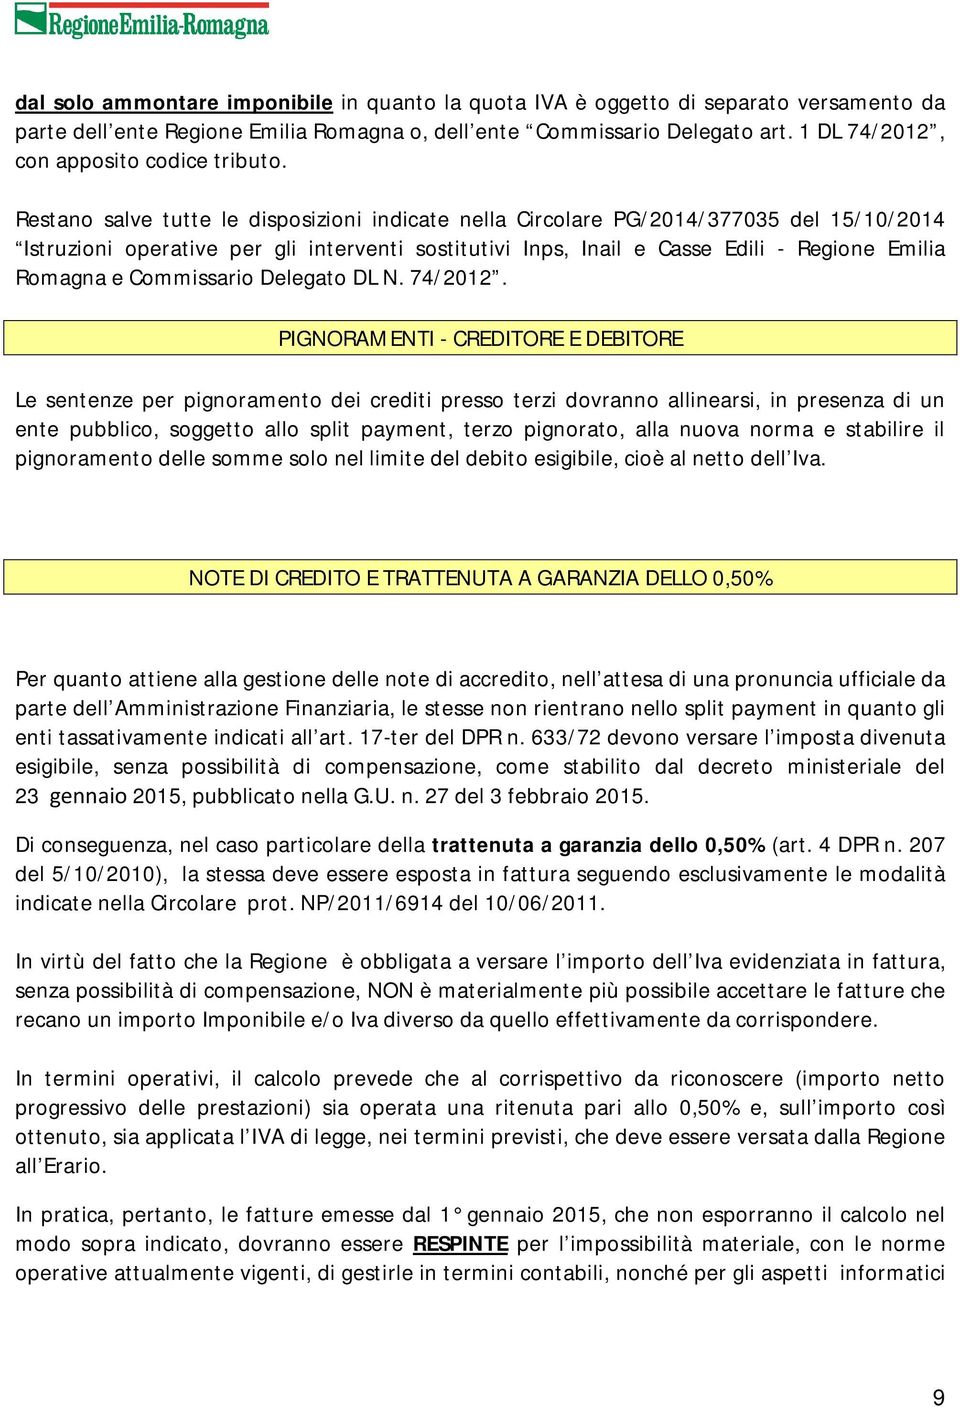 Restano salve tutte le disposizioni indicate nella Circolare PG/2014/377035 del 15/10/2014 Istruzioni operative per gli interventi sostitutivi Inps, Inail e Casse Edili - Regione Emilia Romagna e